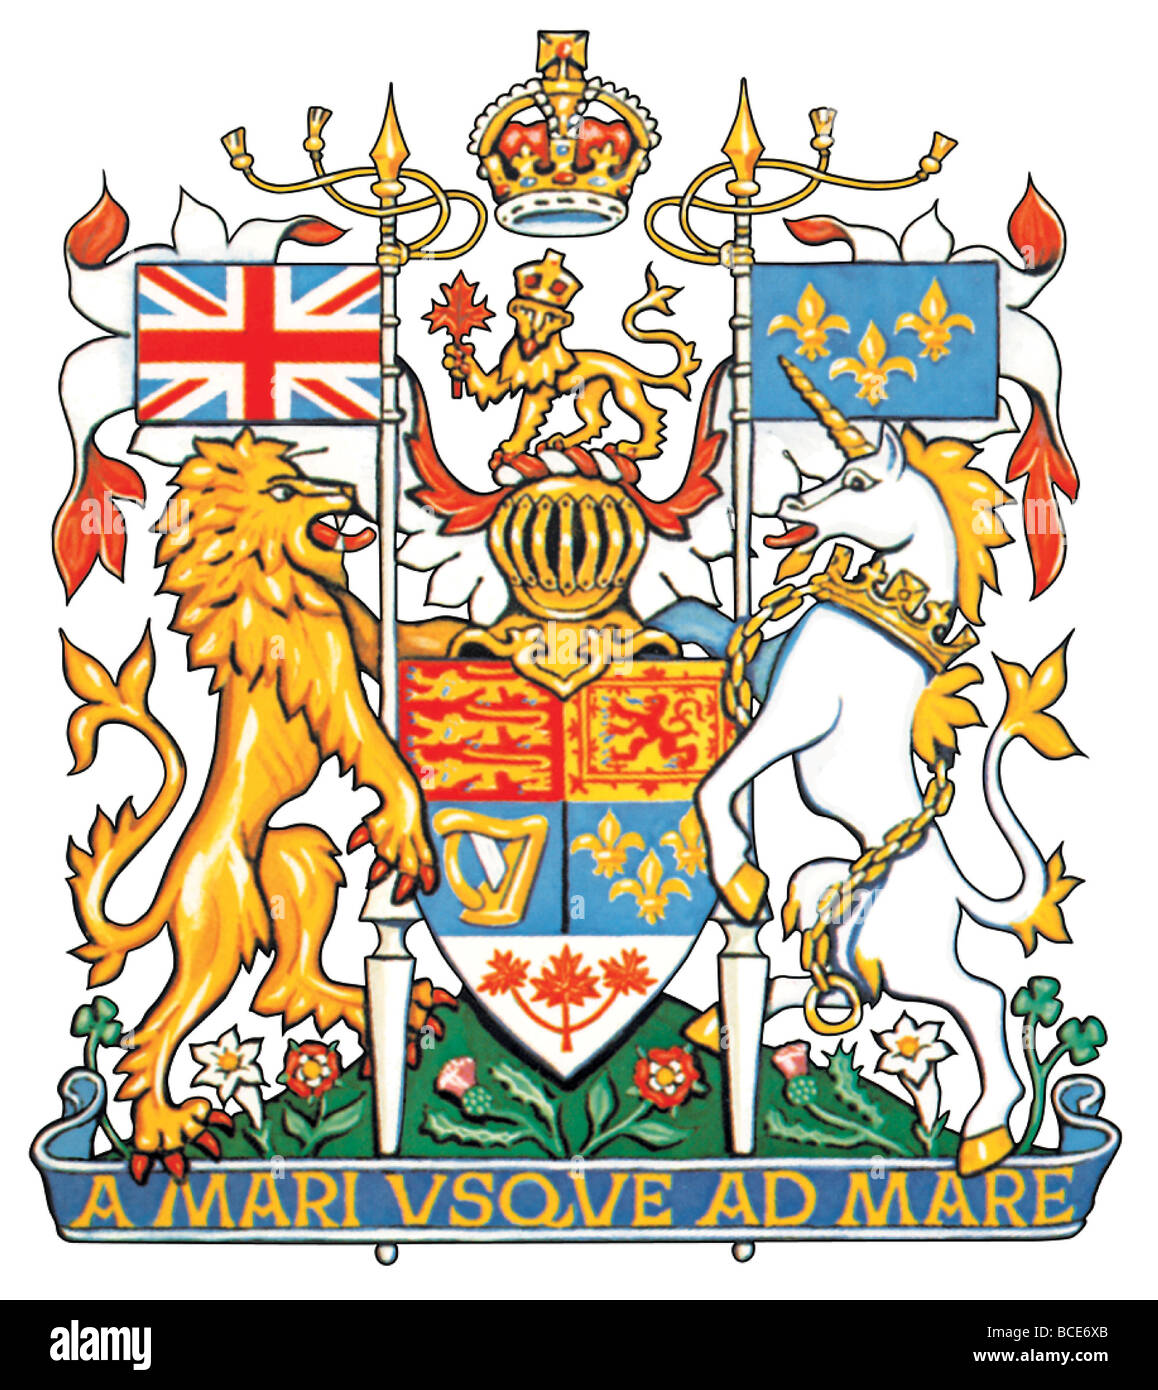 Das Wappen von Kanada, das königlichen Wappen des Vereinigten Königreichs, abgeleitet bedeutet auch französische Traditionen und Krawatten. Stockfoto